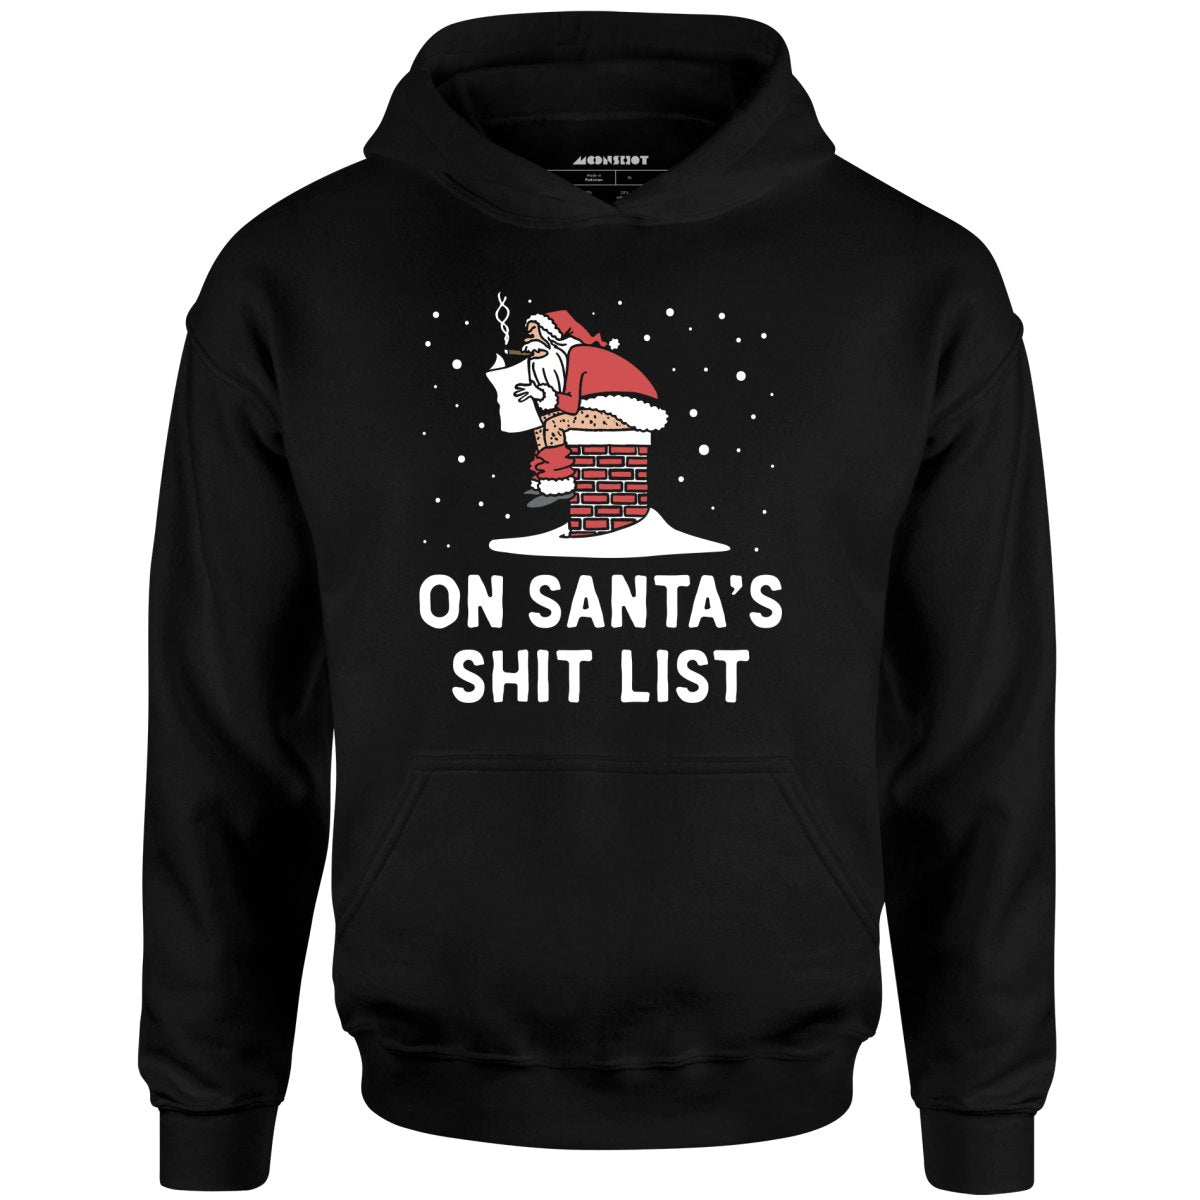 On Santa's Shit List - Unisex Hoodie